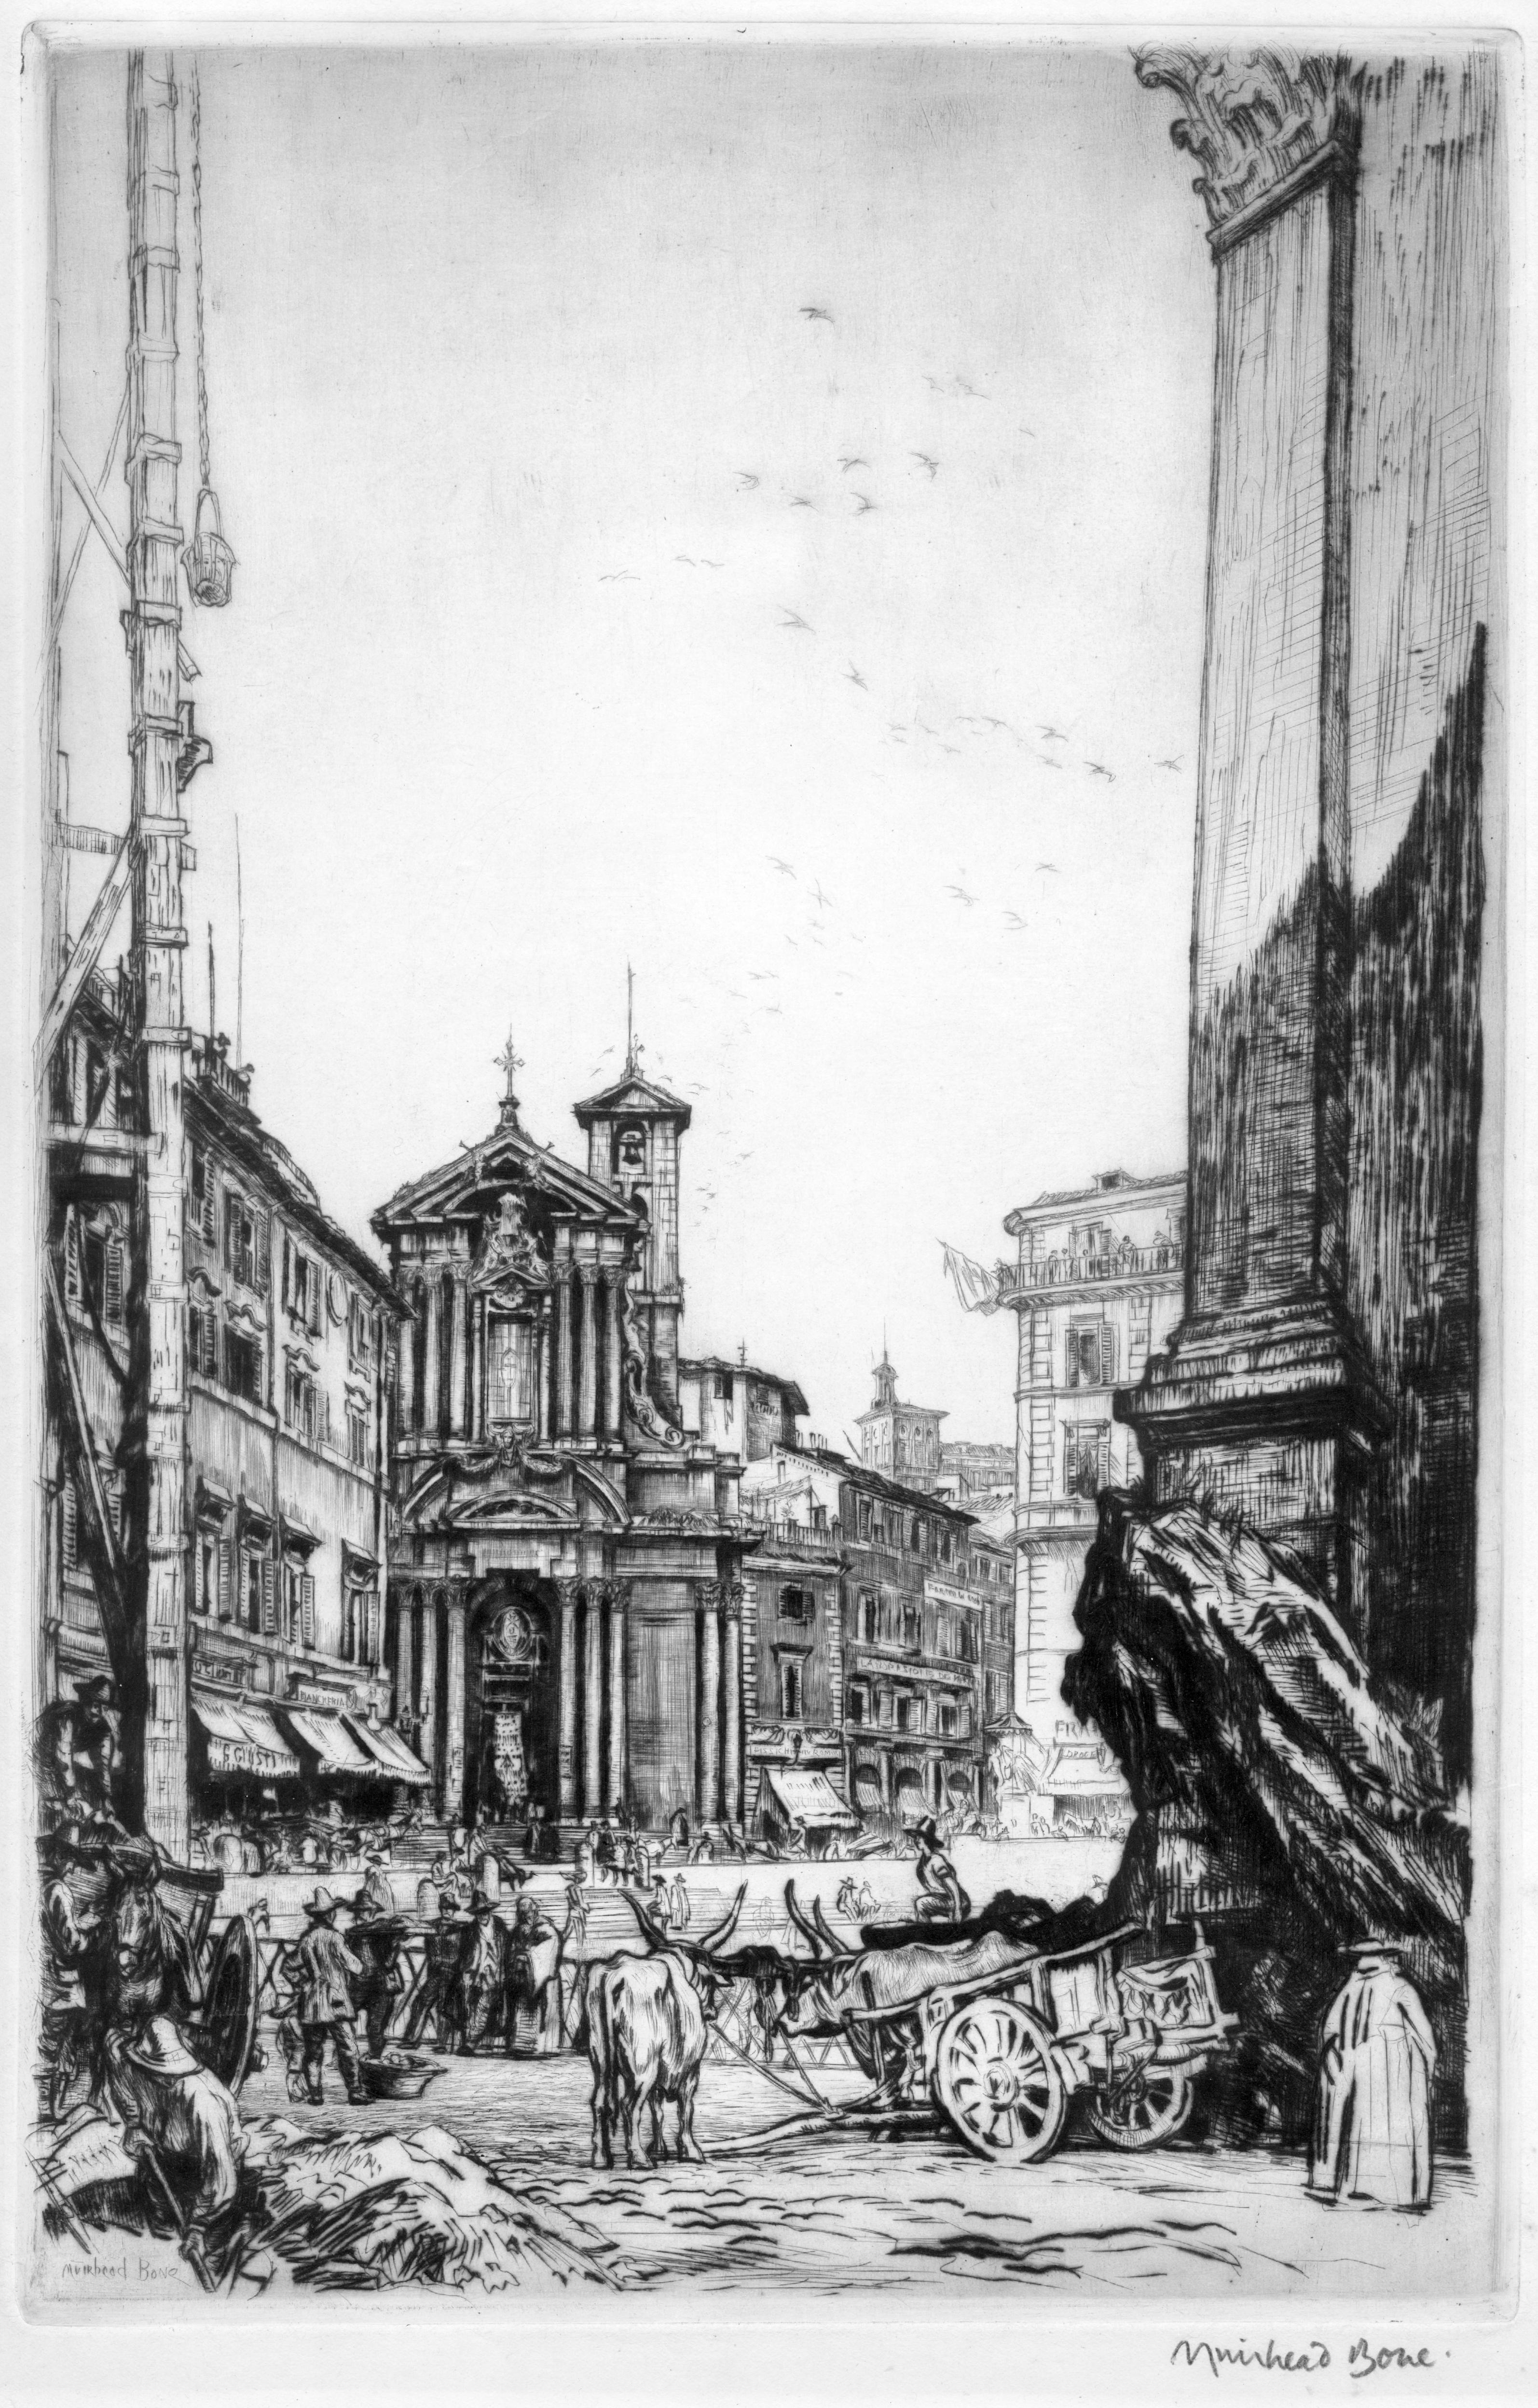 Landschaft des Romes des 19. Jahrhunderts von Meister des feinen Druckdrucks Sir Muirhead Bone